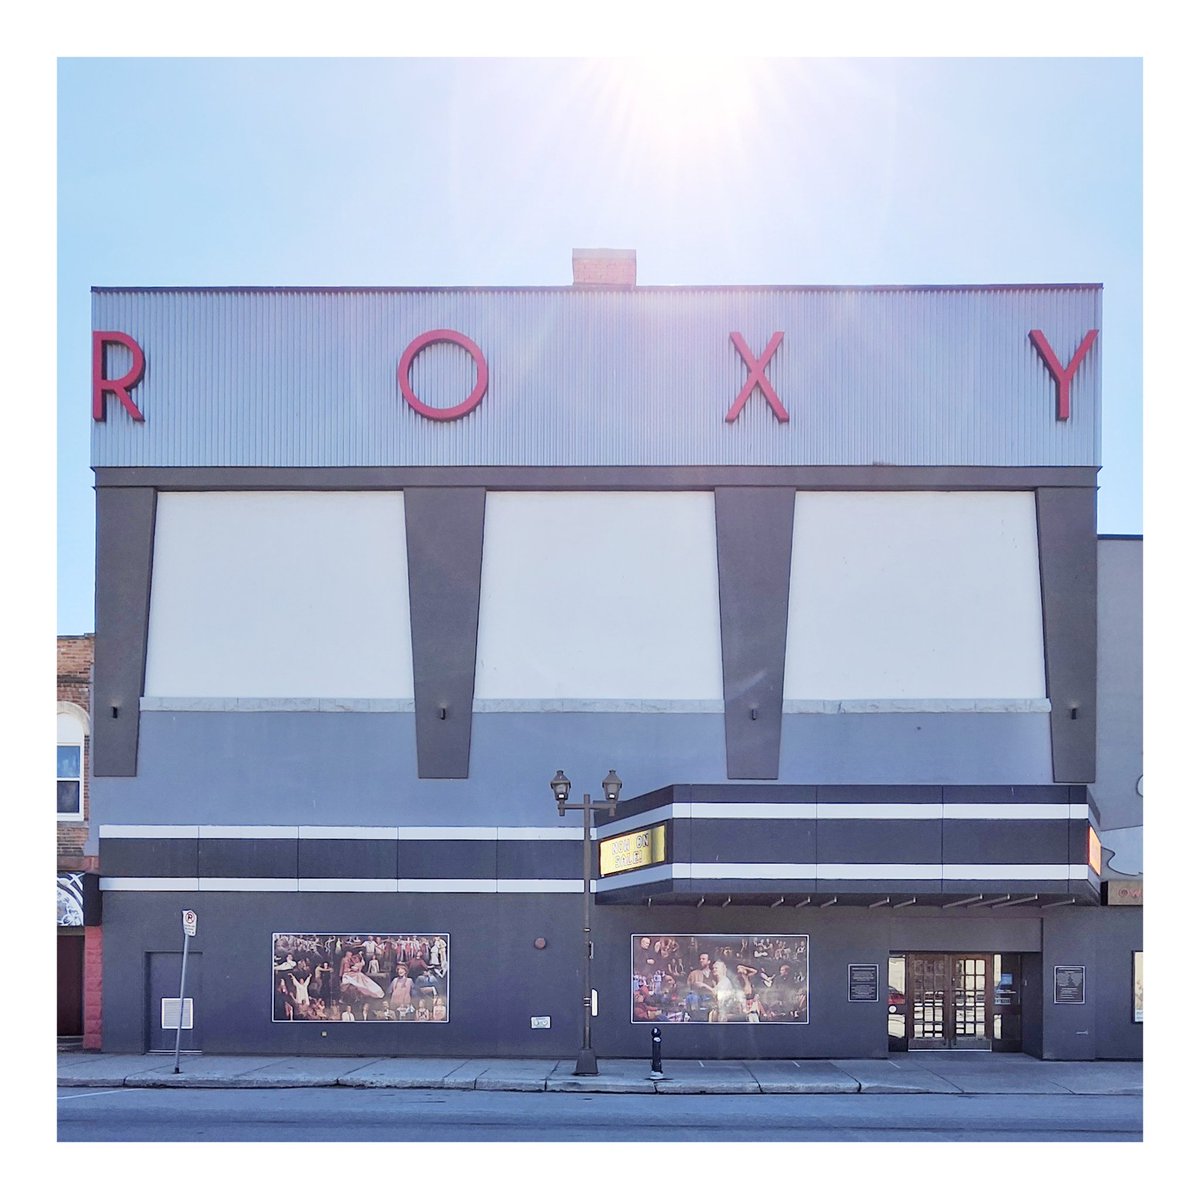 ROXY. #OwenSound #RoxyTheatre #RoxyMusic #OwenSoundLittleTheatre #Photography